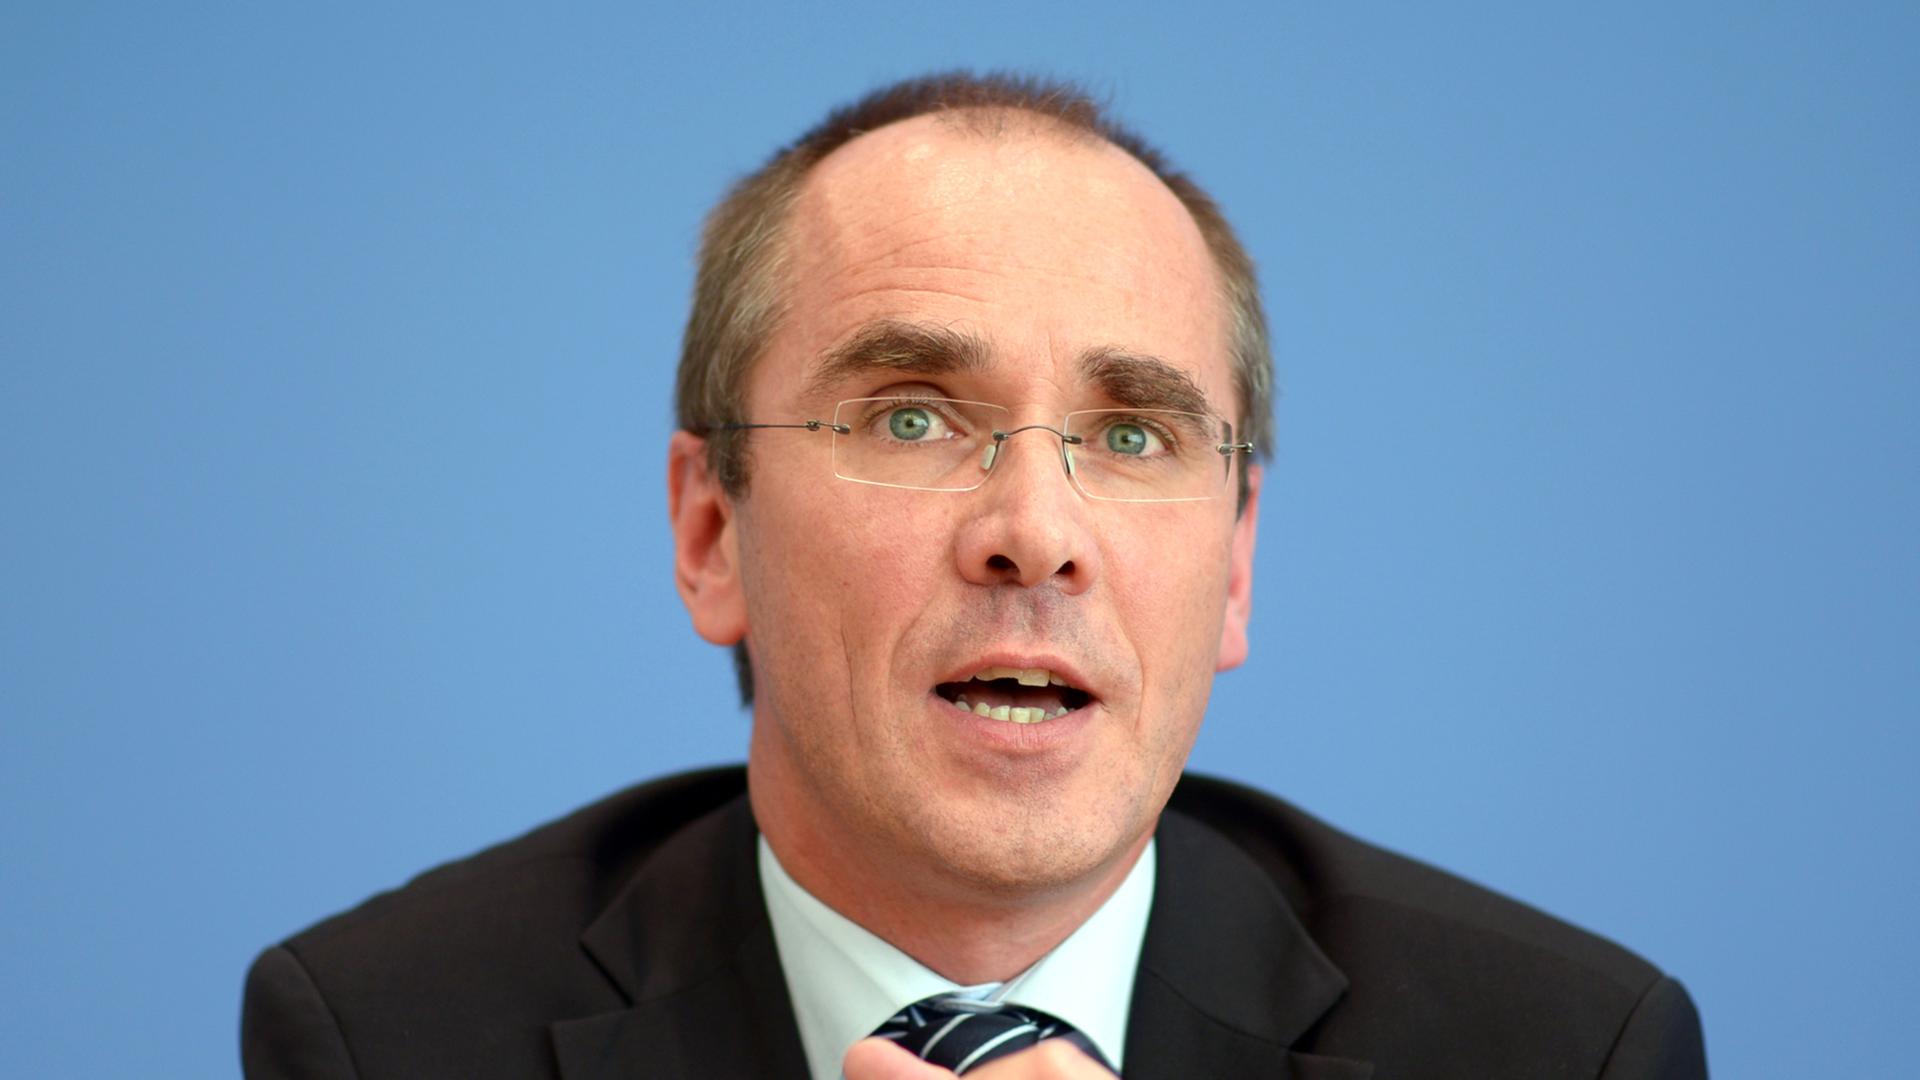 Der Geschäftsführer von Unicef Deutschland, Christian Schneider, spricht gibt am 27.10.2014 im Haus der Bundespressekonferenz in Berlin auf einer Pressekonferenz.